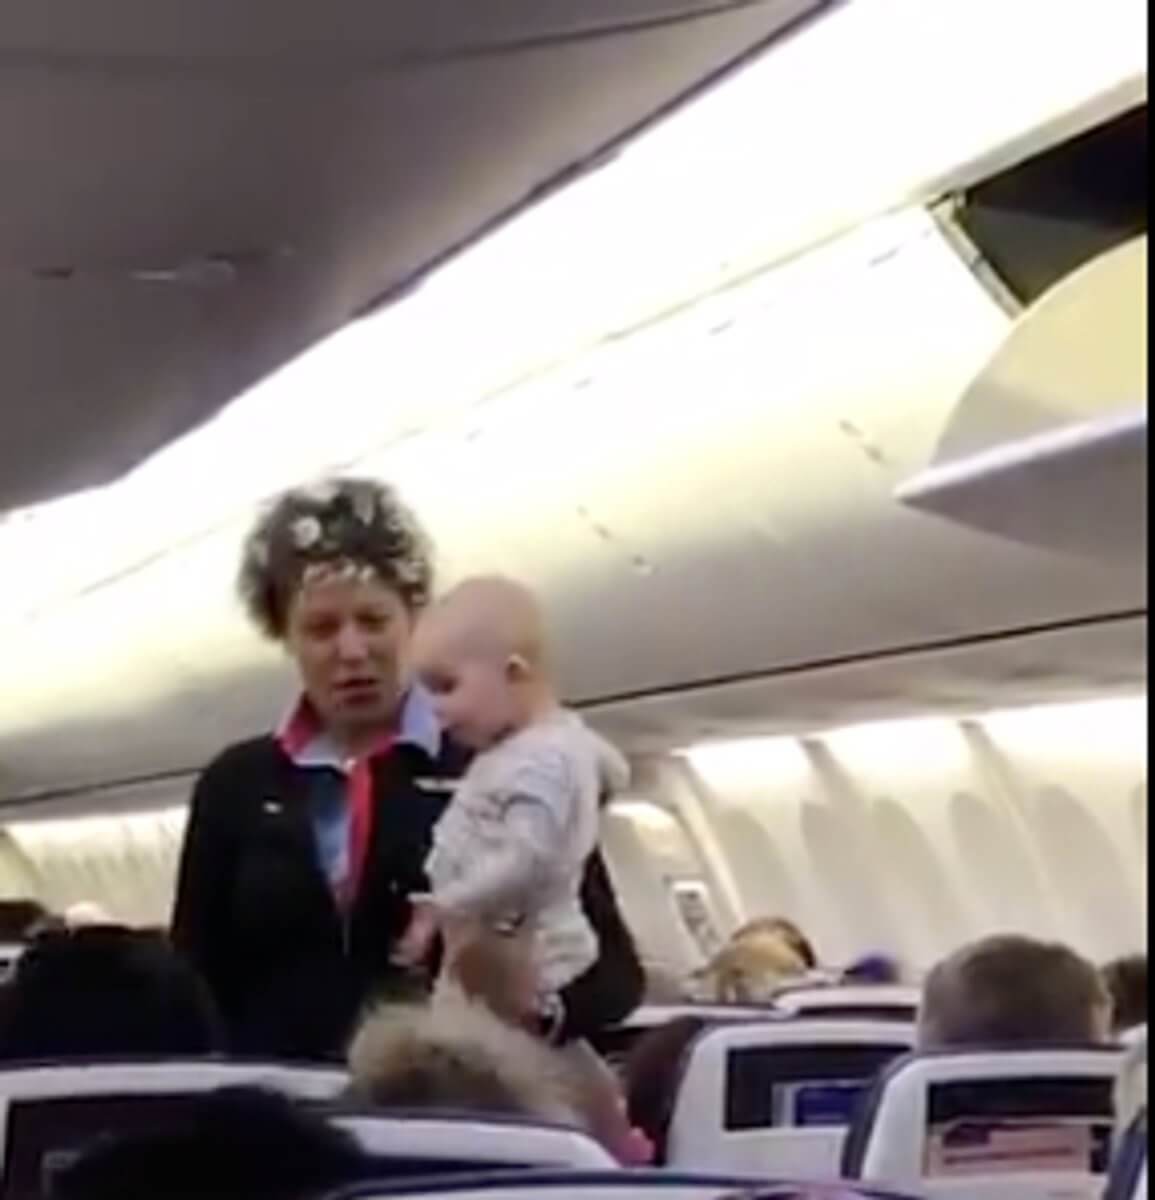 Η κίνηση που έκανε η αεροσυνοδός ηρέμησε το μωρό [video]